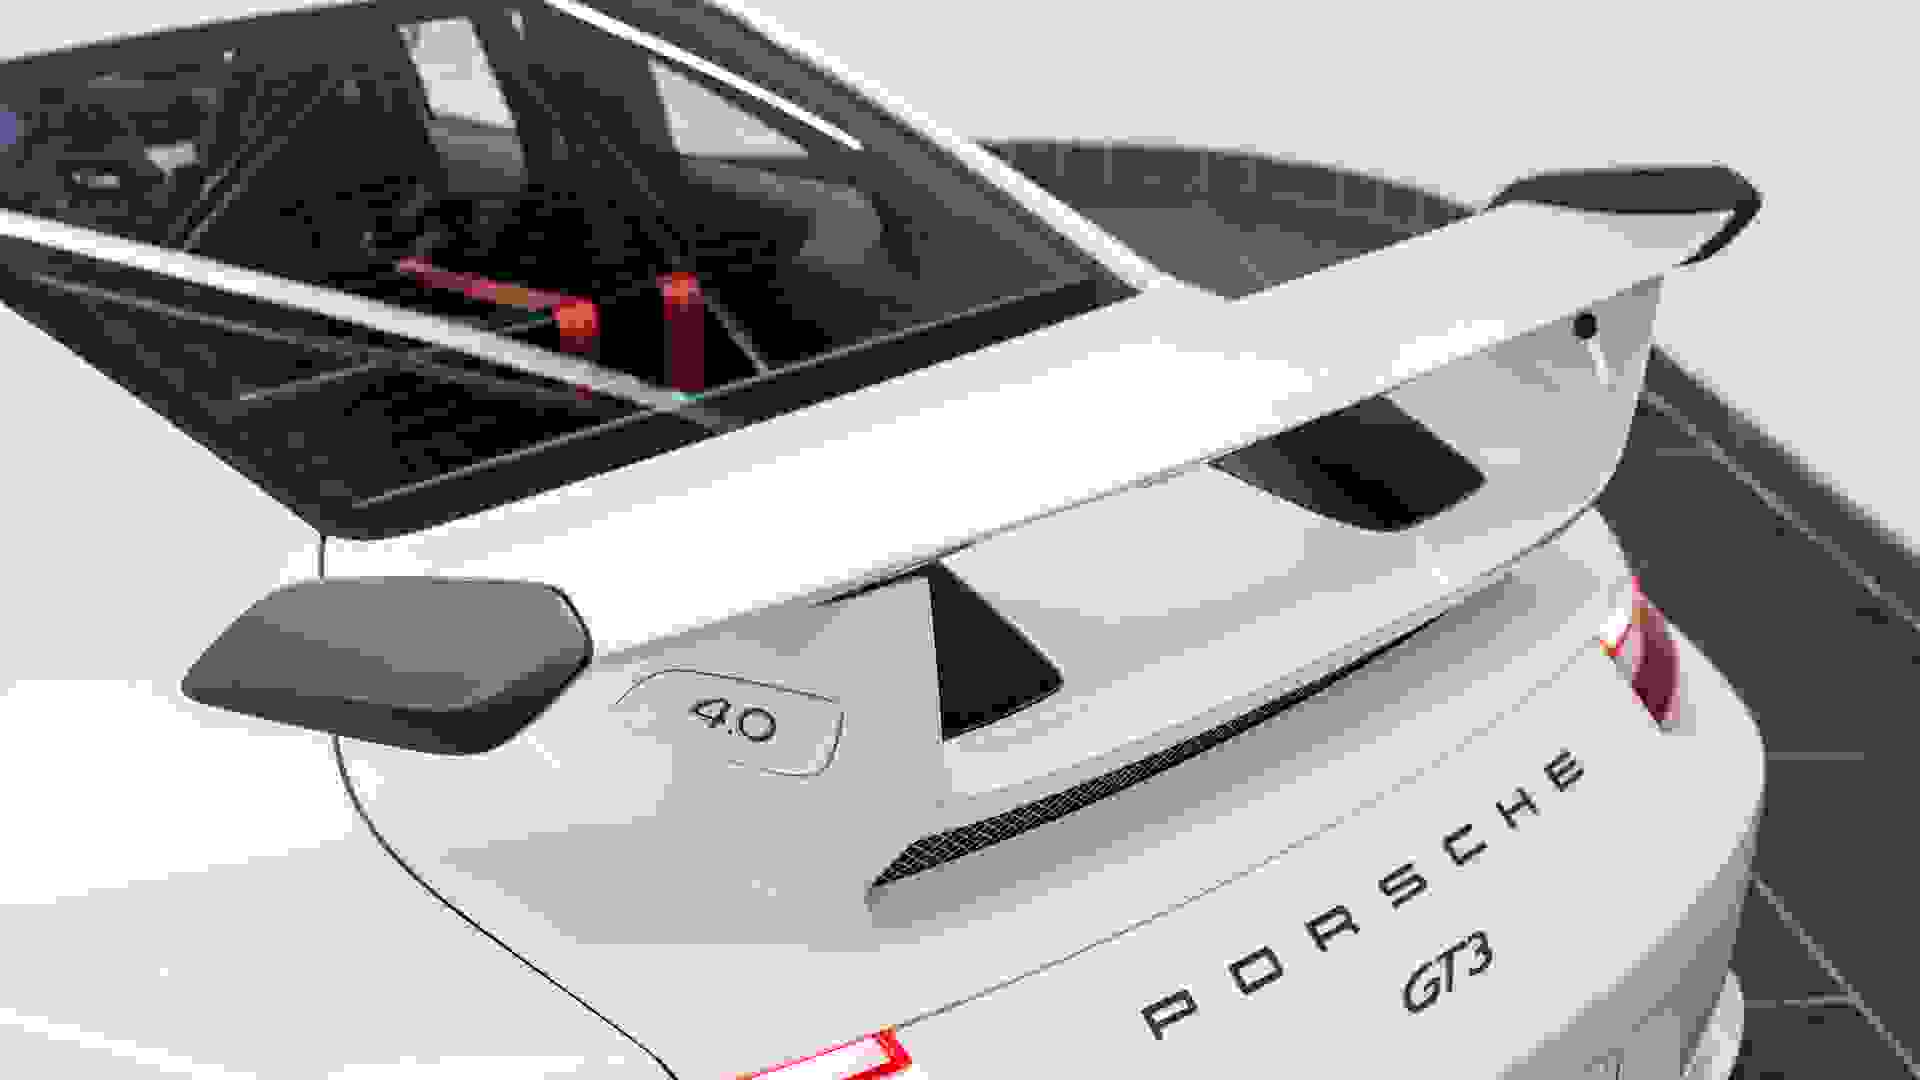 Porsche GT3 Clubsport Photo 06c8273c-3a9b-4217-8ec5-05e652684c08.jpg